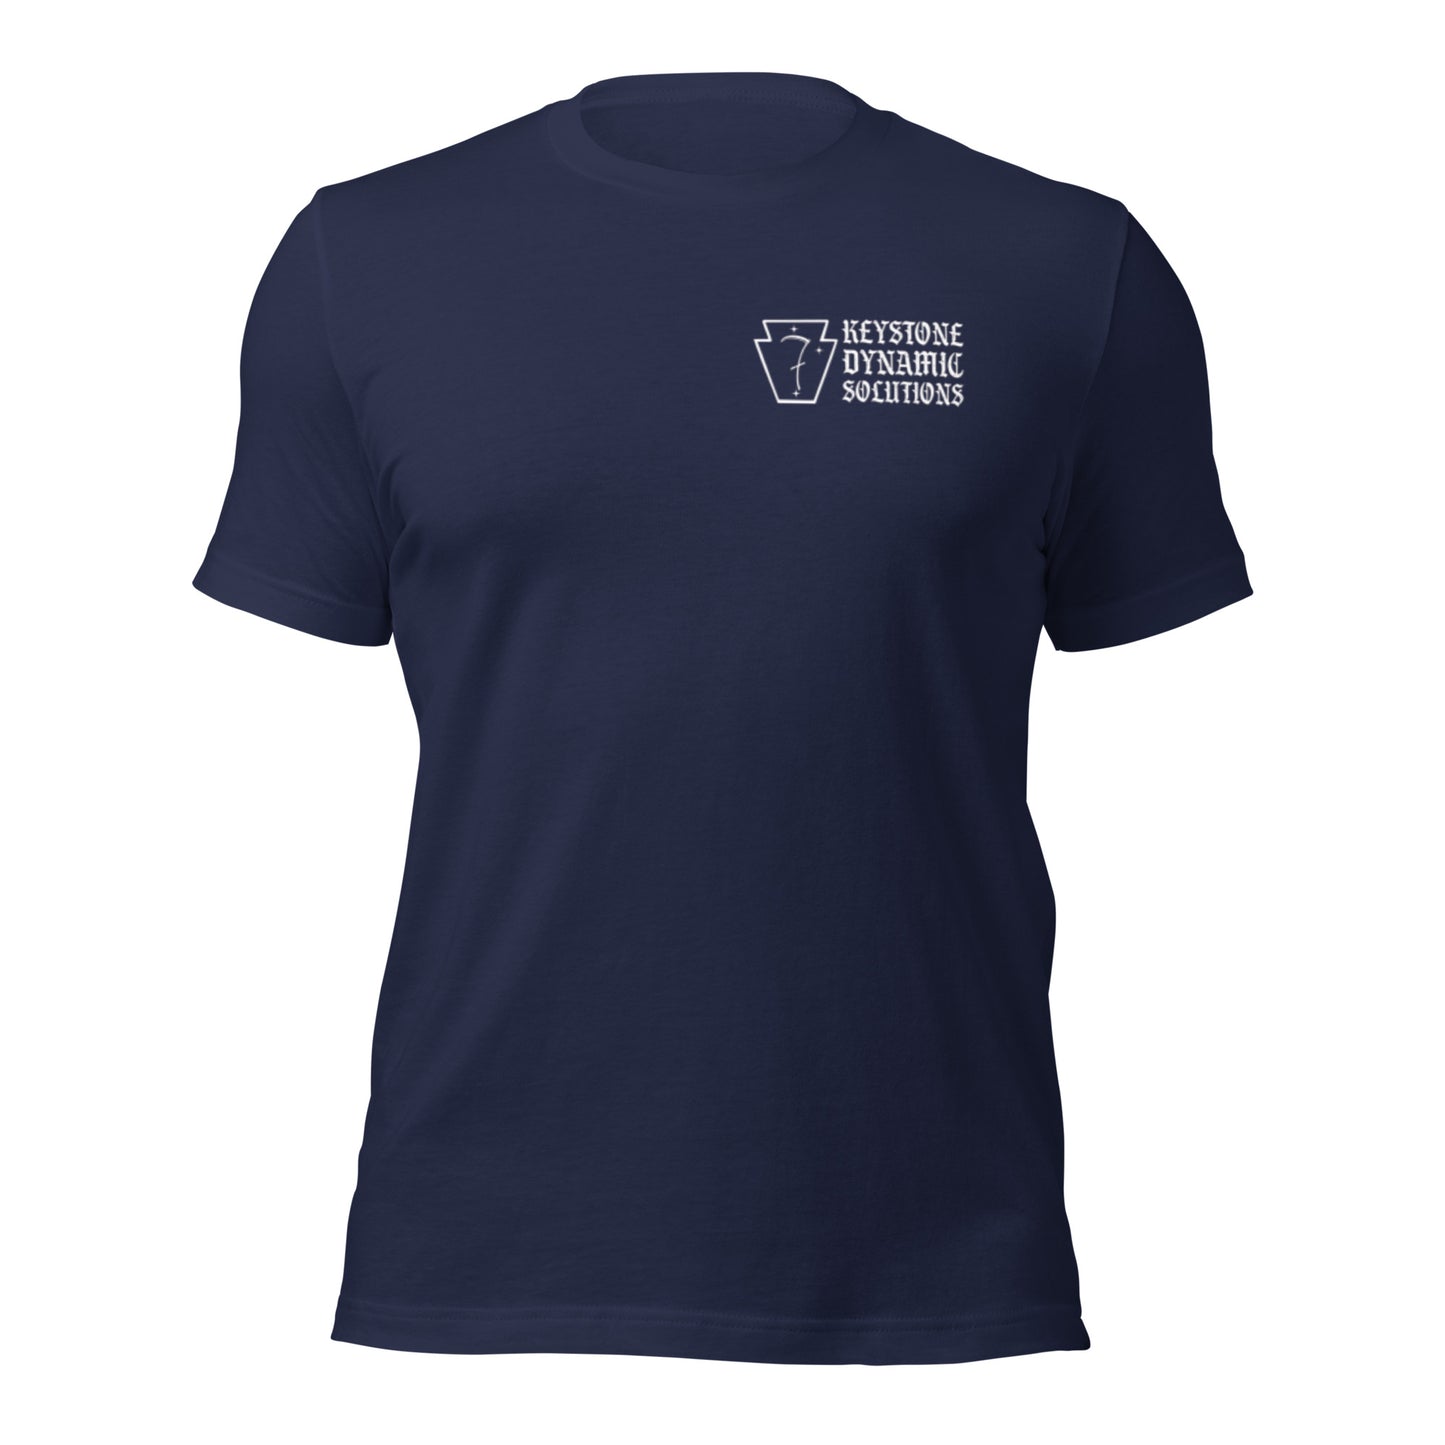 Three Rivers Minimalist shirt- Light logo